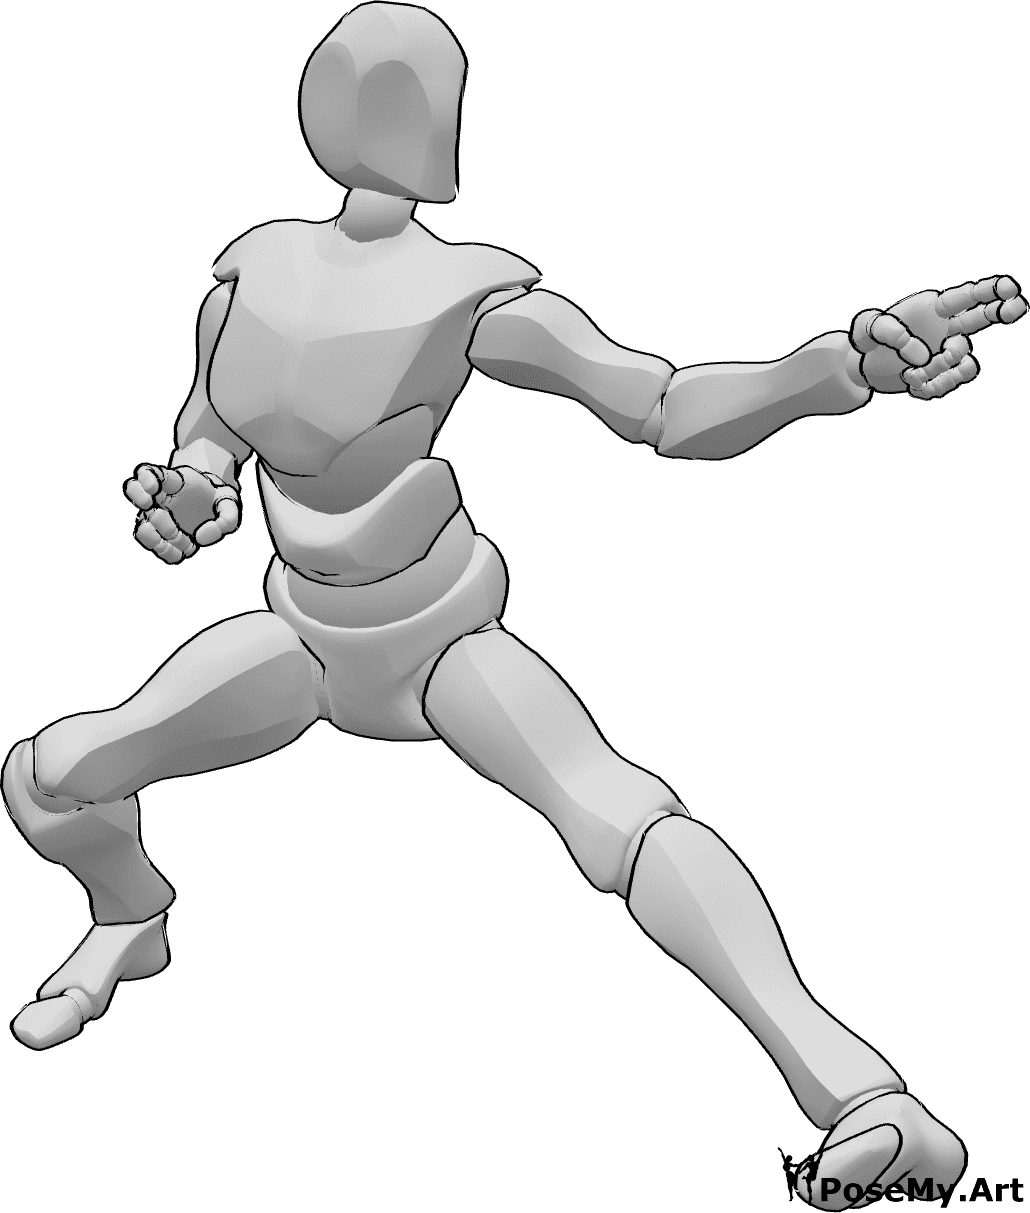 Referência de poses- Pose de ataque de kung fu masculino - Homem de kung fu a atacar com pose de braço esquerdo